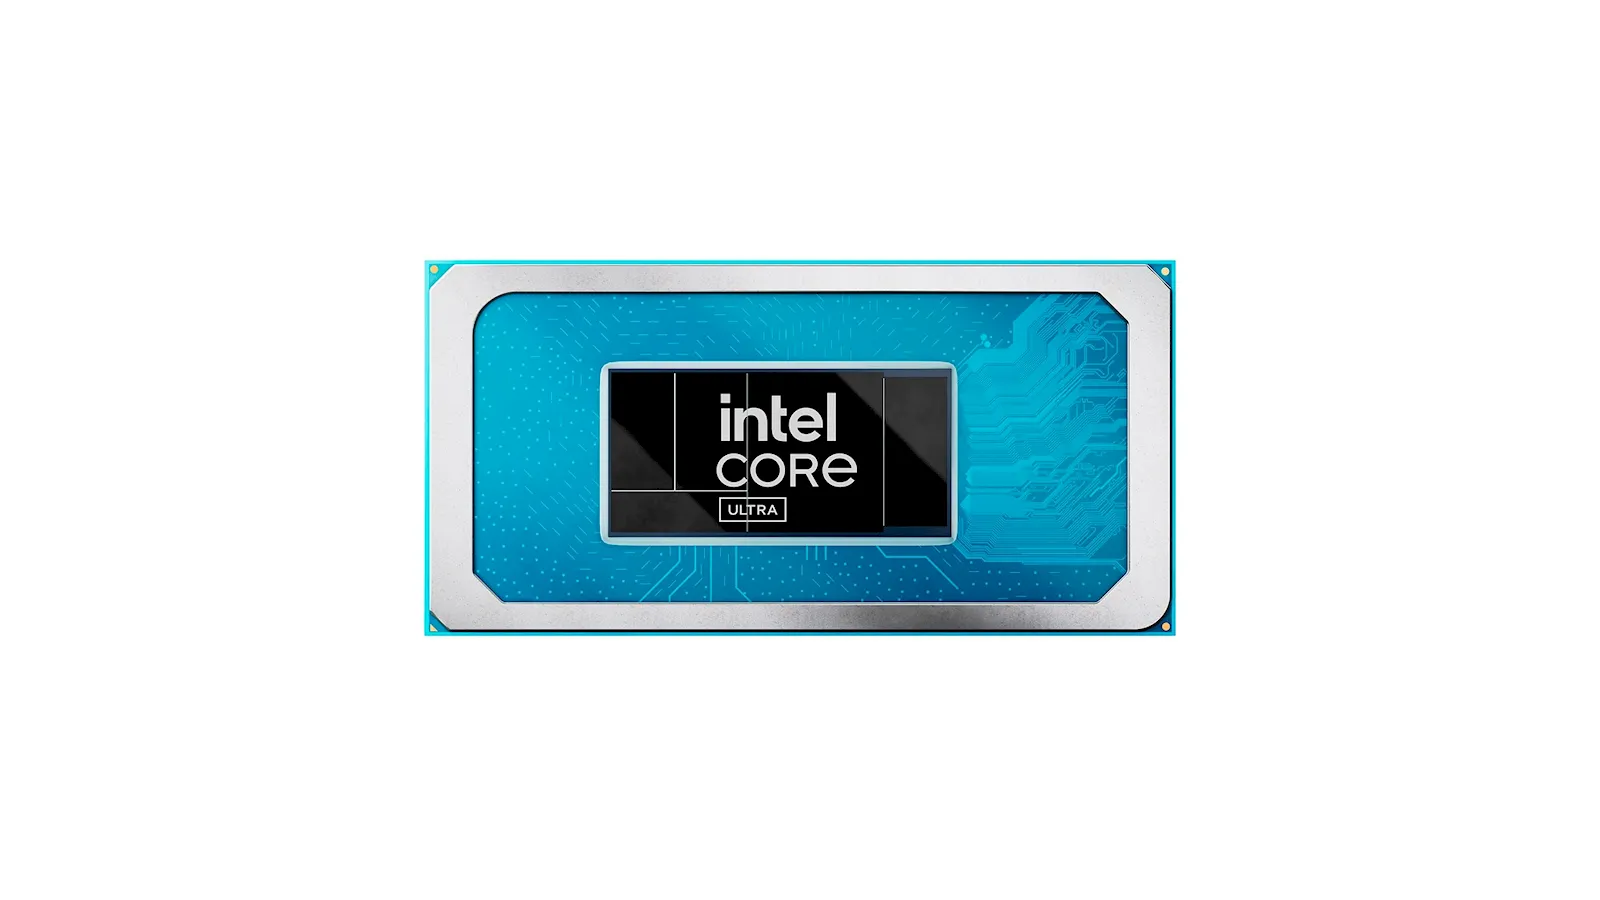 Intel Core Ultra 3 MMOSITE - Thông tin công nghệ, review, thủ thuật PC, gaming